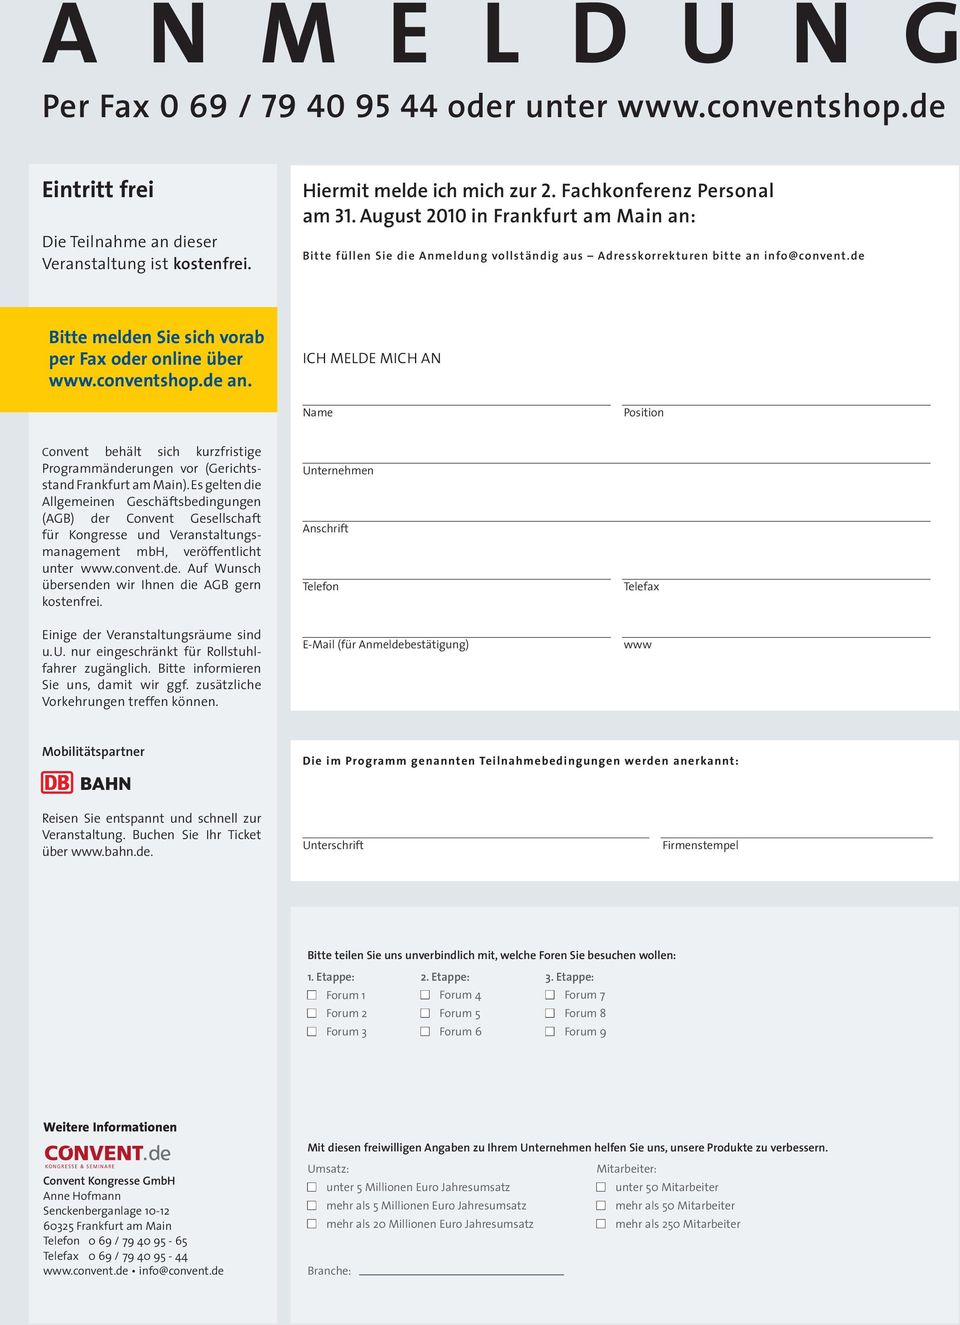 de Bitte melden Sie sich vorab per Fax oder online über www.conventshop.de an.